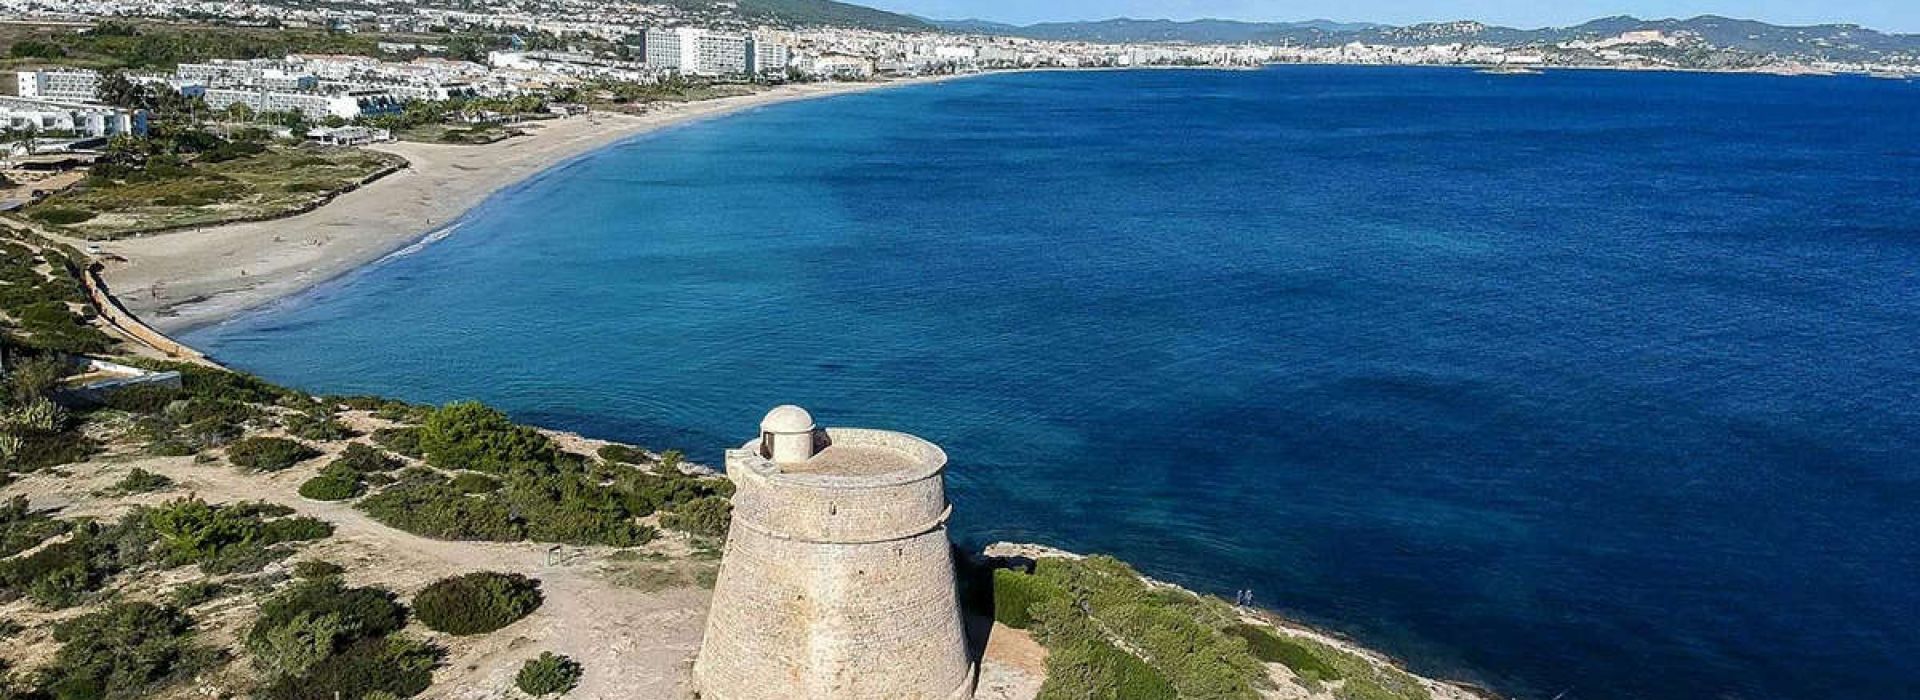 10 razones para elegir Playa d'en Bossa como tu destino vacacional en Ibiza